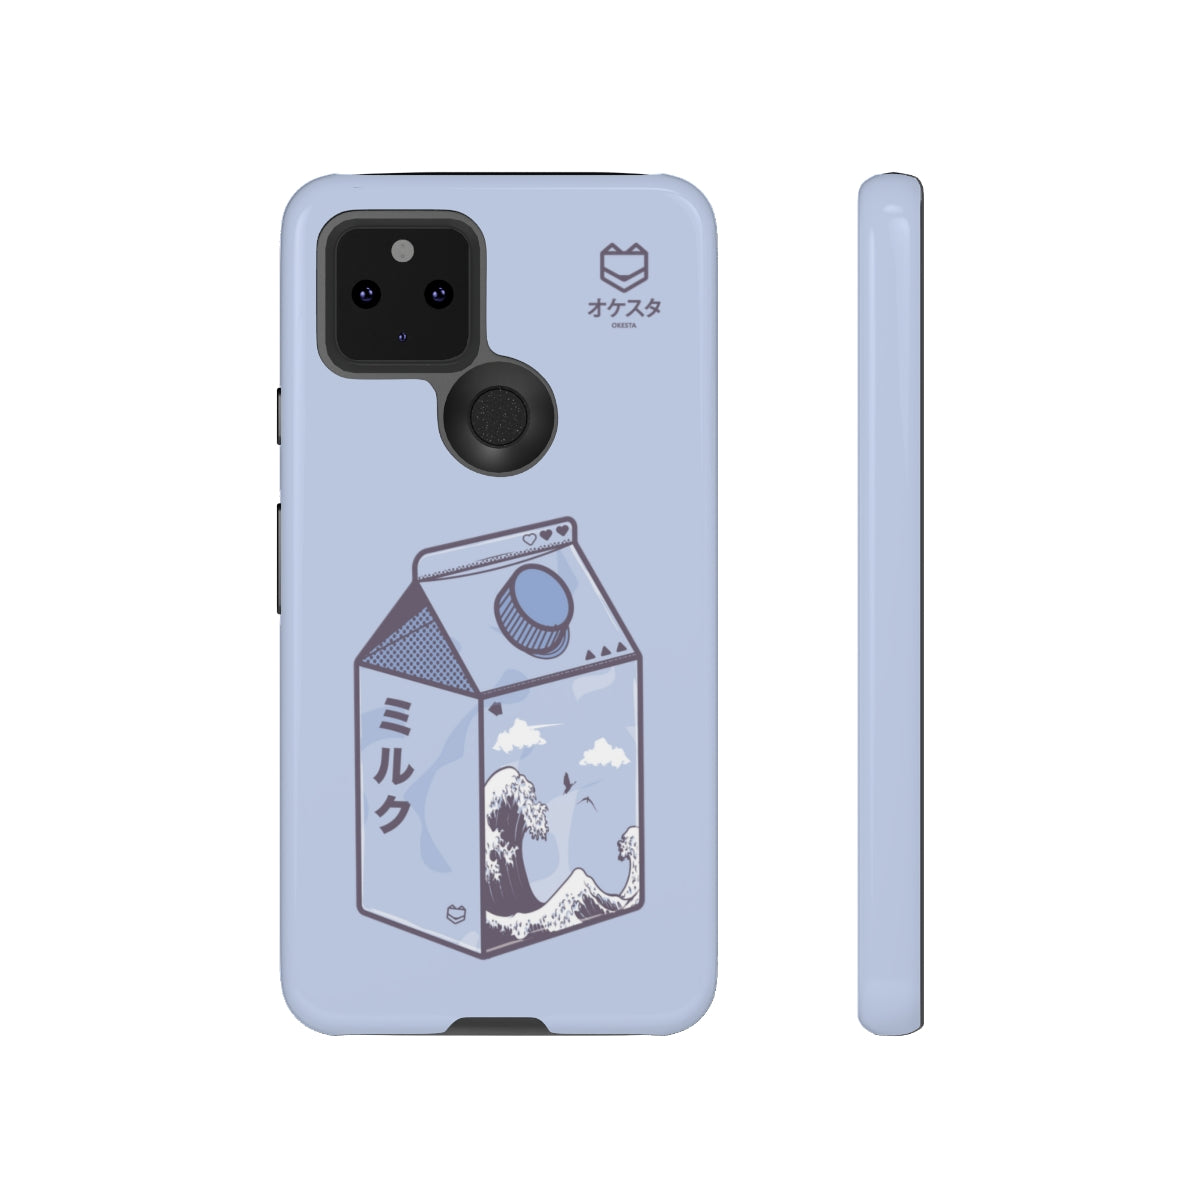 Kanagawa Carton Google Pixel Case